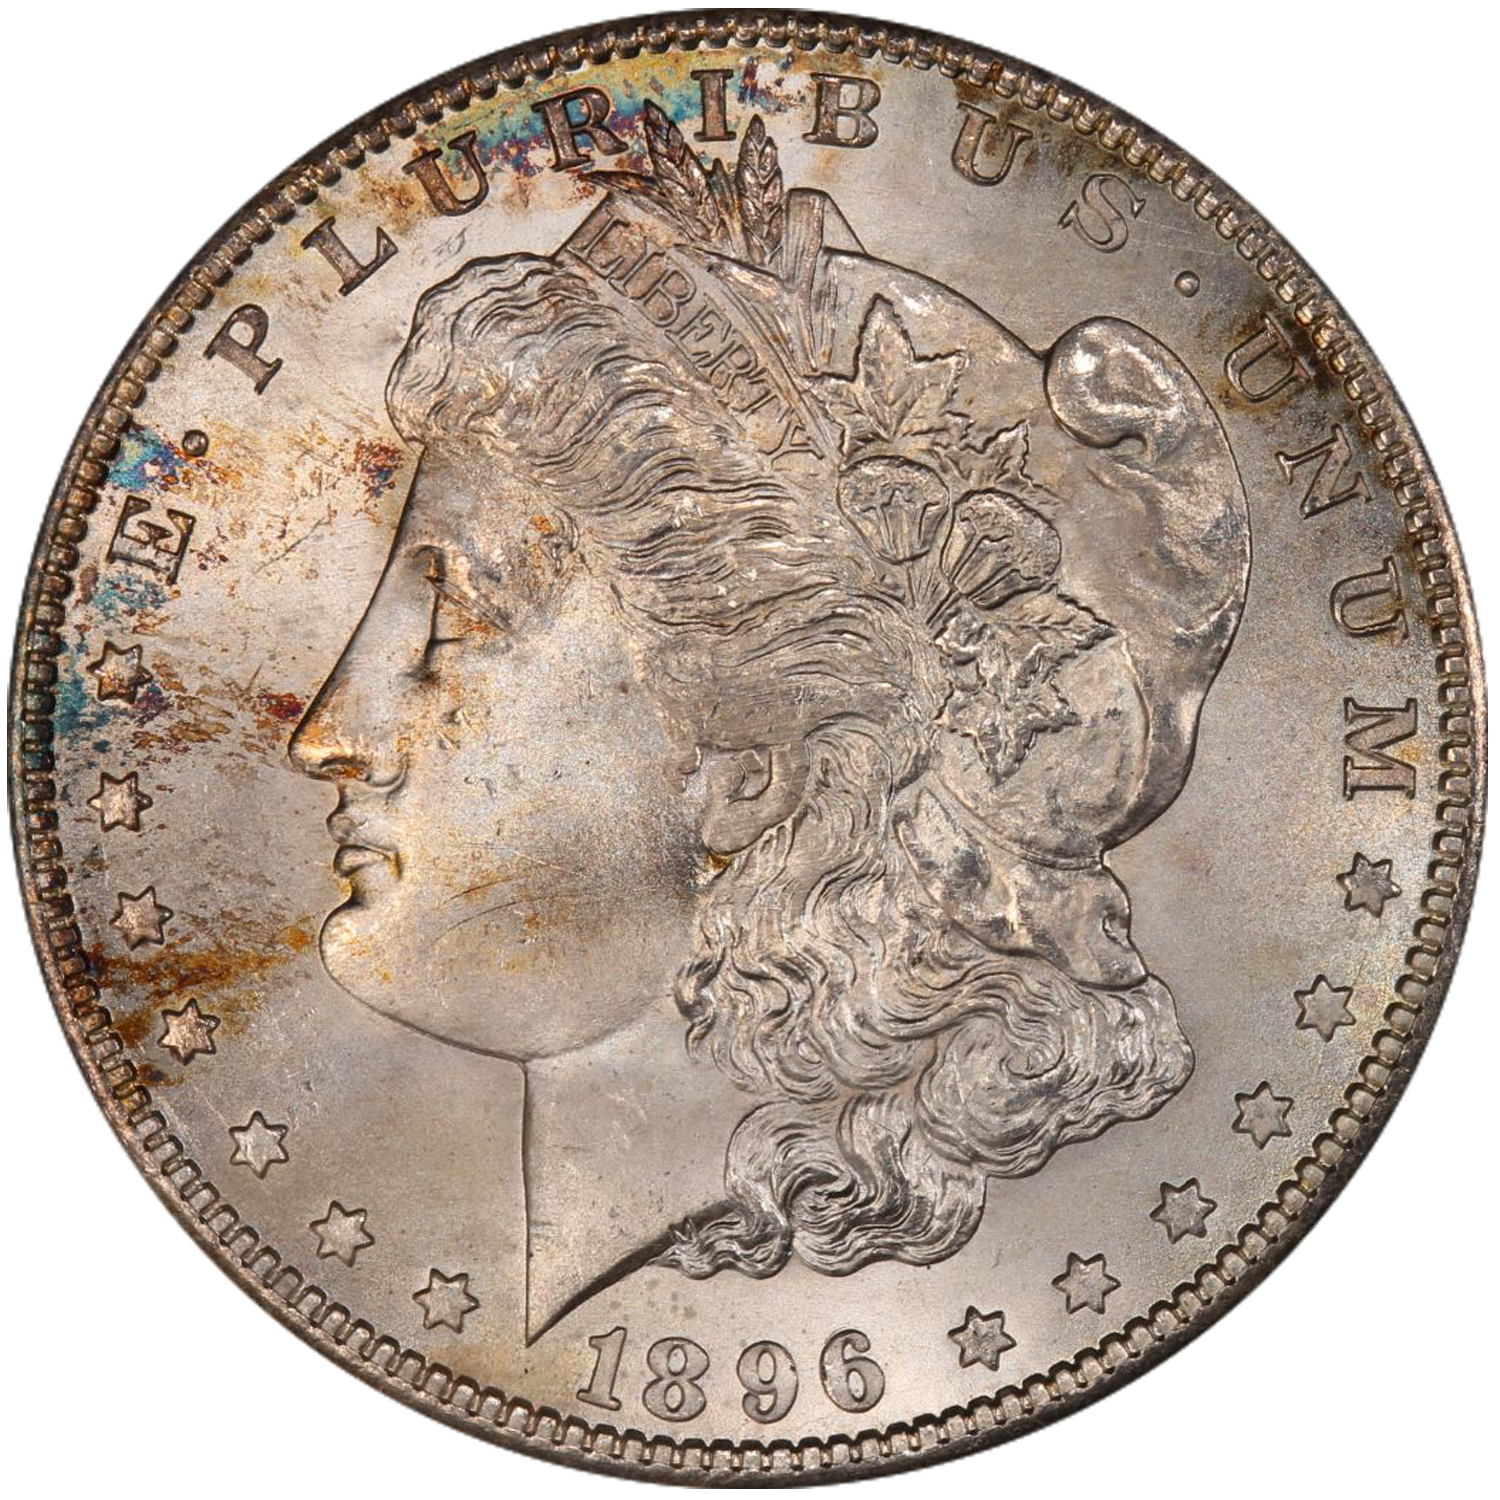 1896 s mintmark morgan dollar value guide